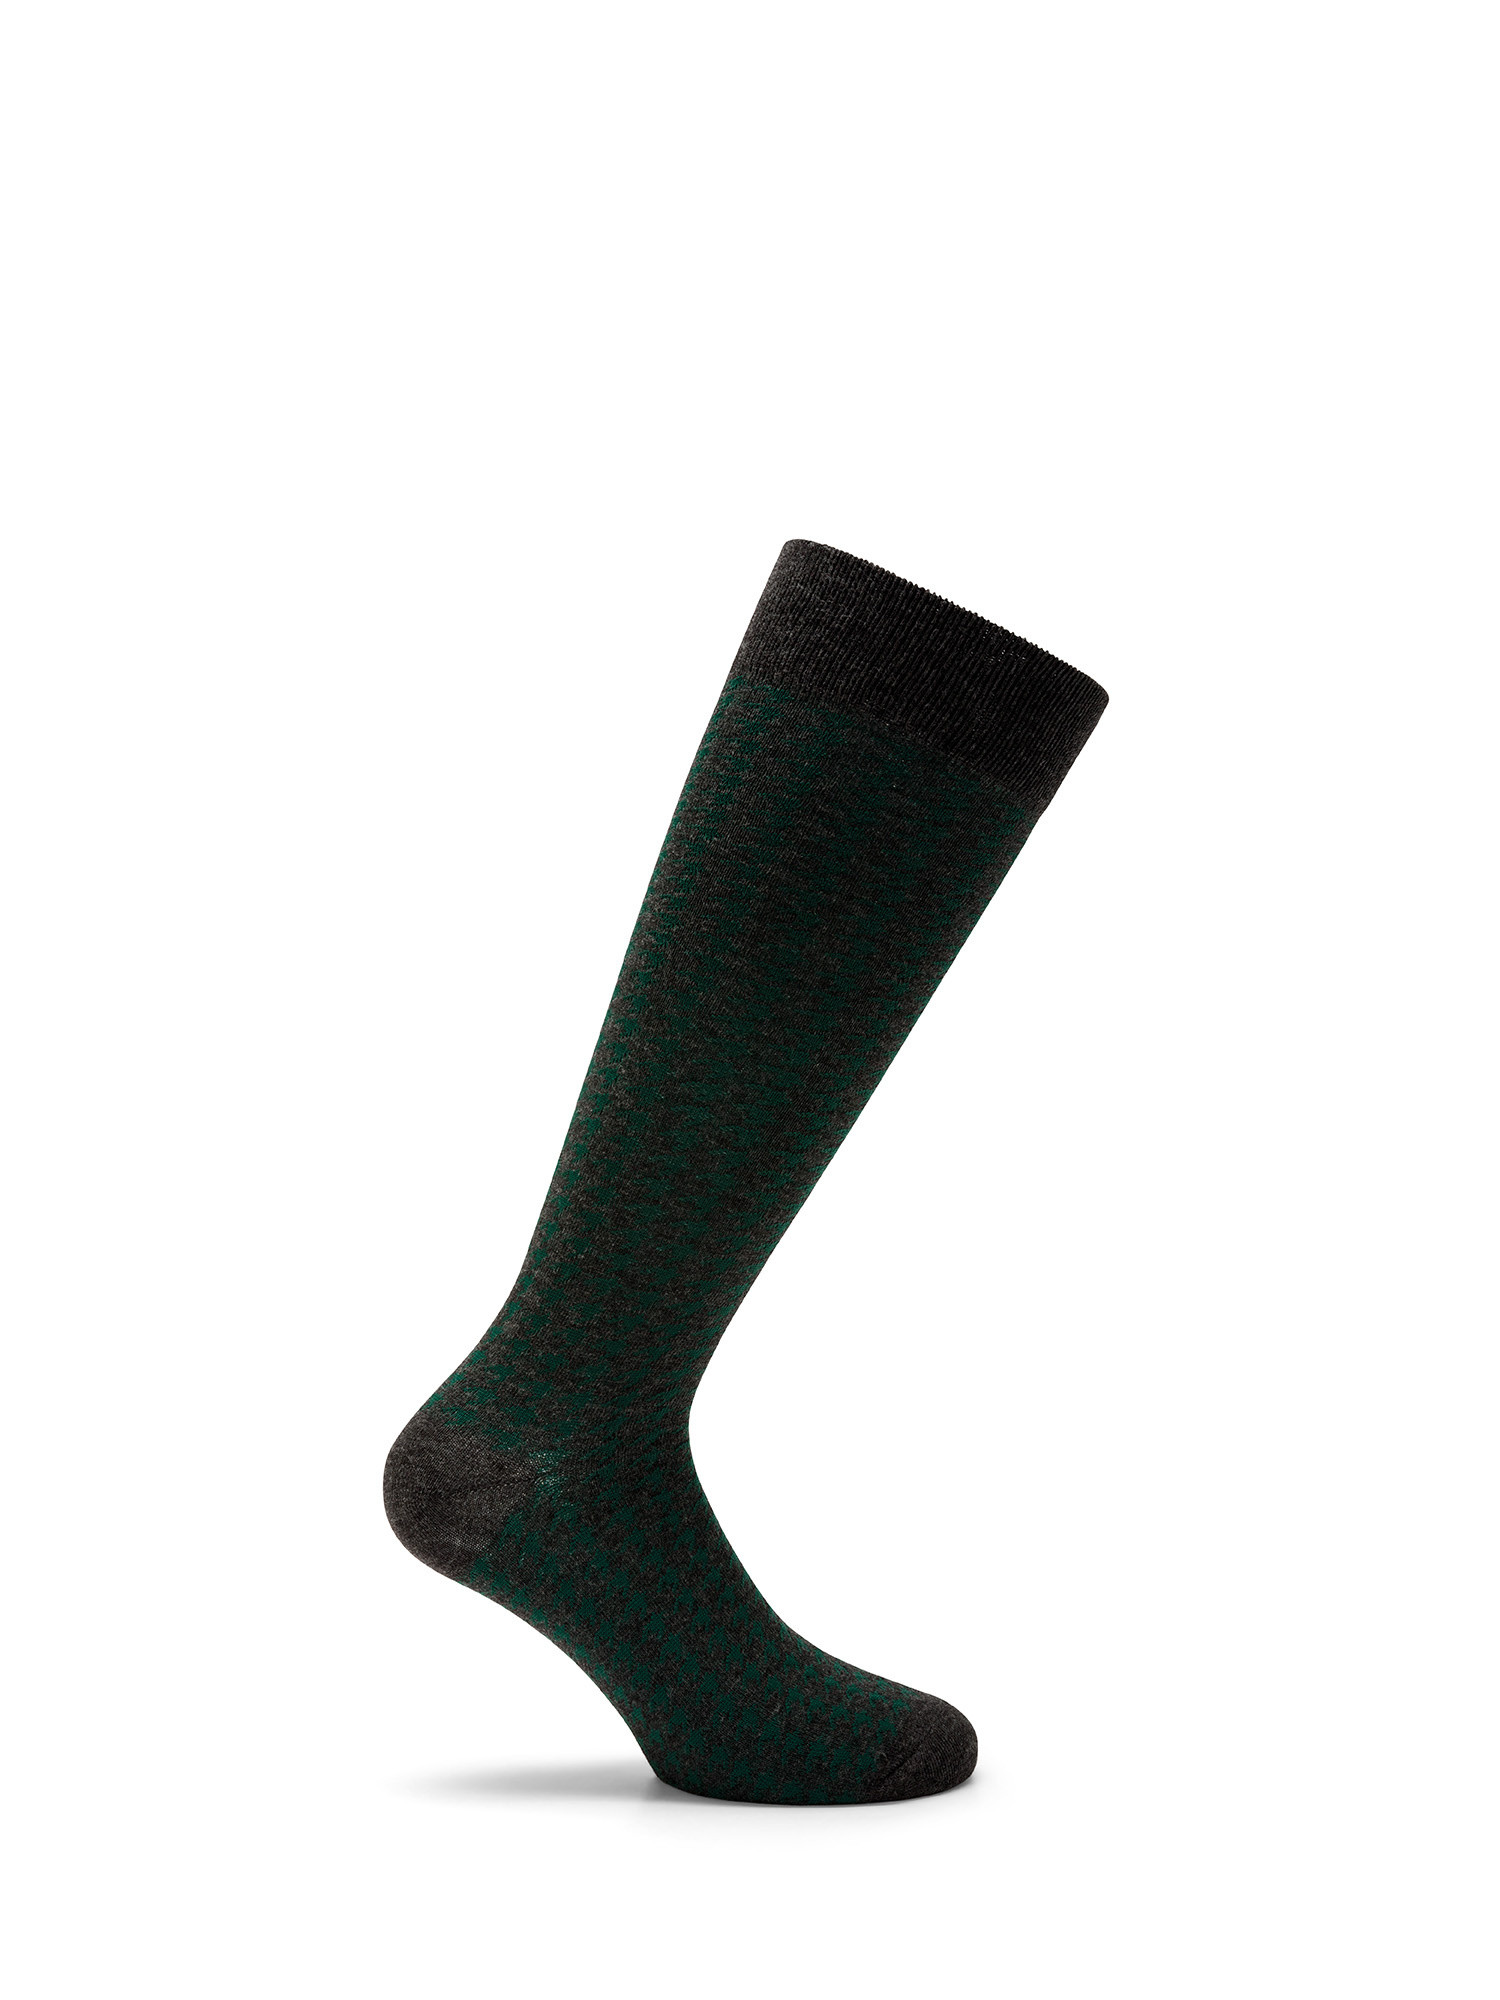 Luca D'Altieri - Set of 3 patterned long socks, Grey, large image number 3